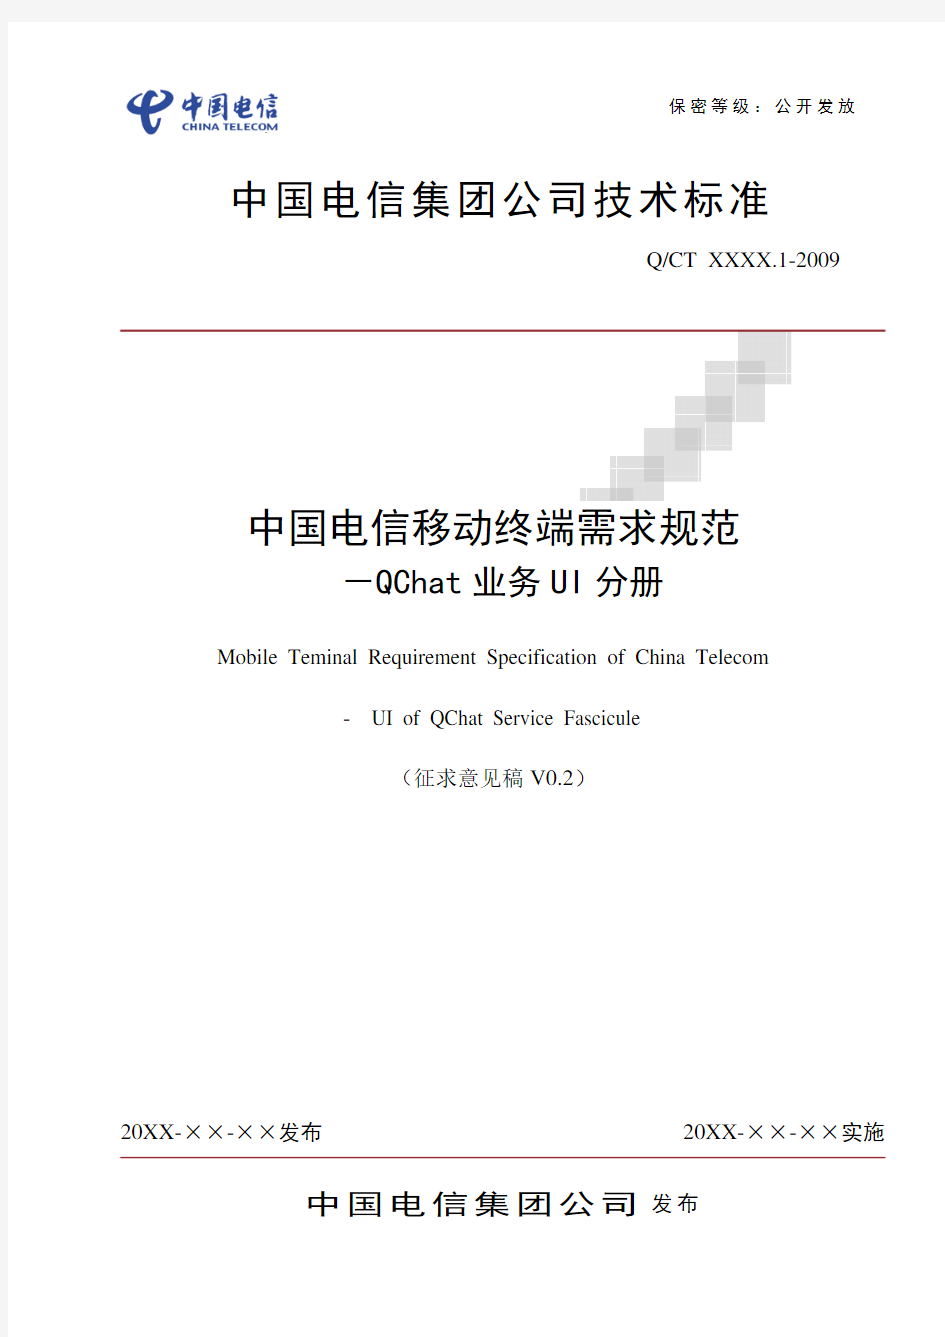 中国电信移动终端需求规范-QChat业务UI分册(修订稿)20091120-to终端厂家